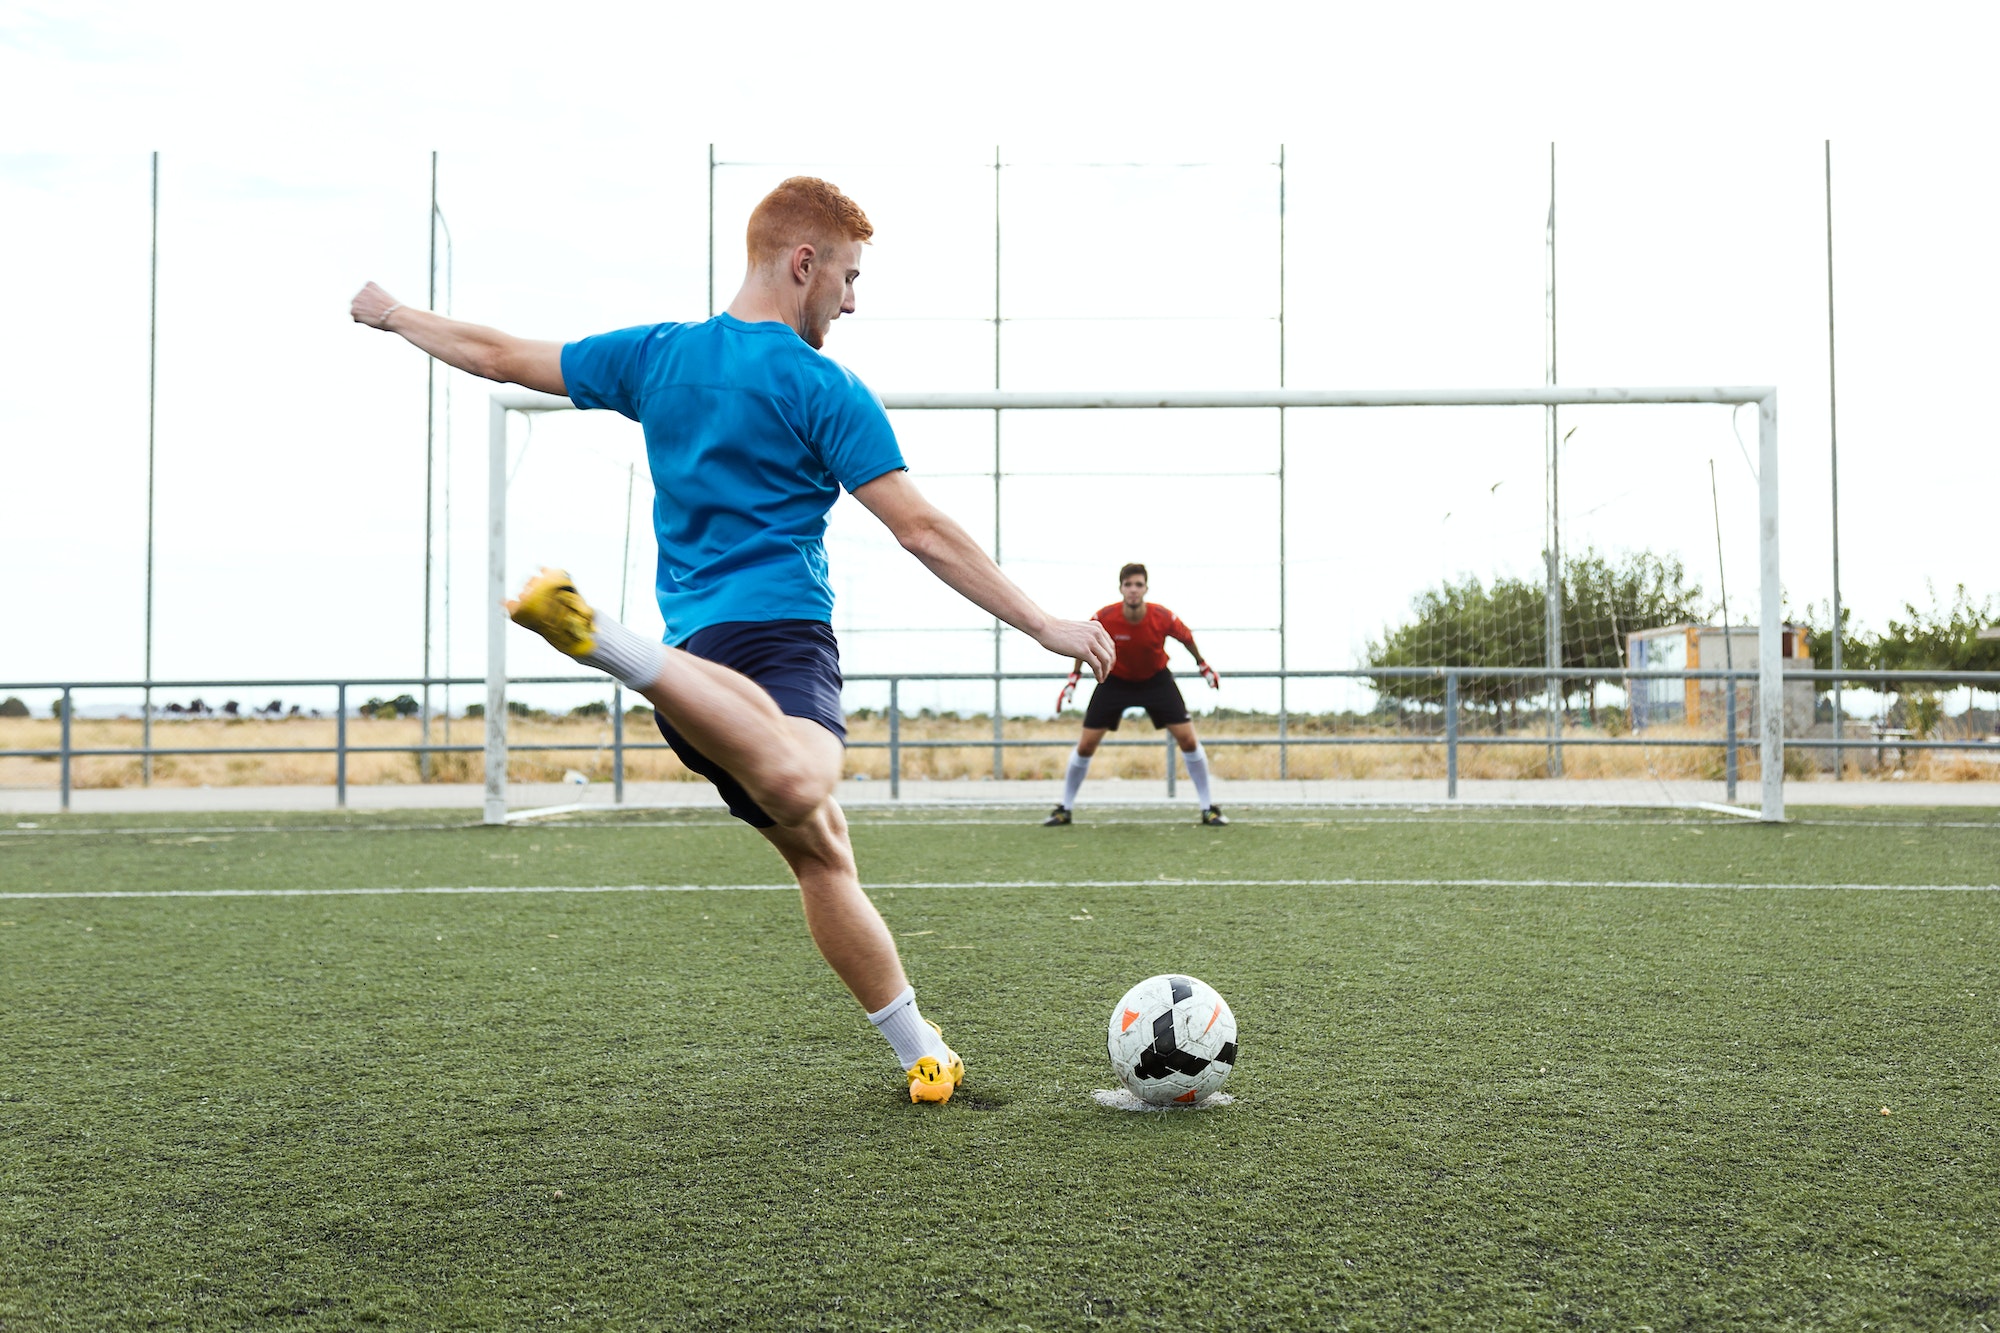 Player kicking a soccer ball